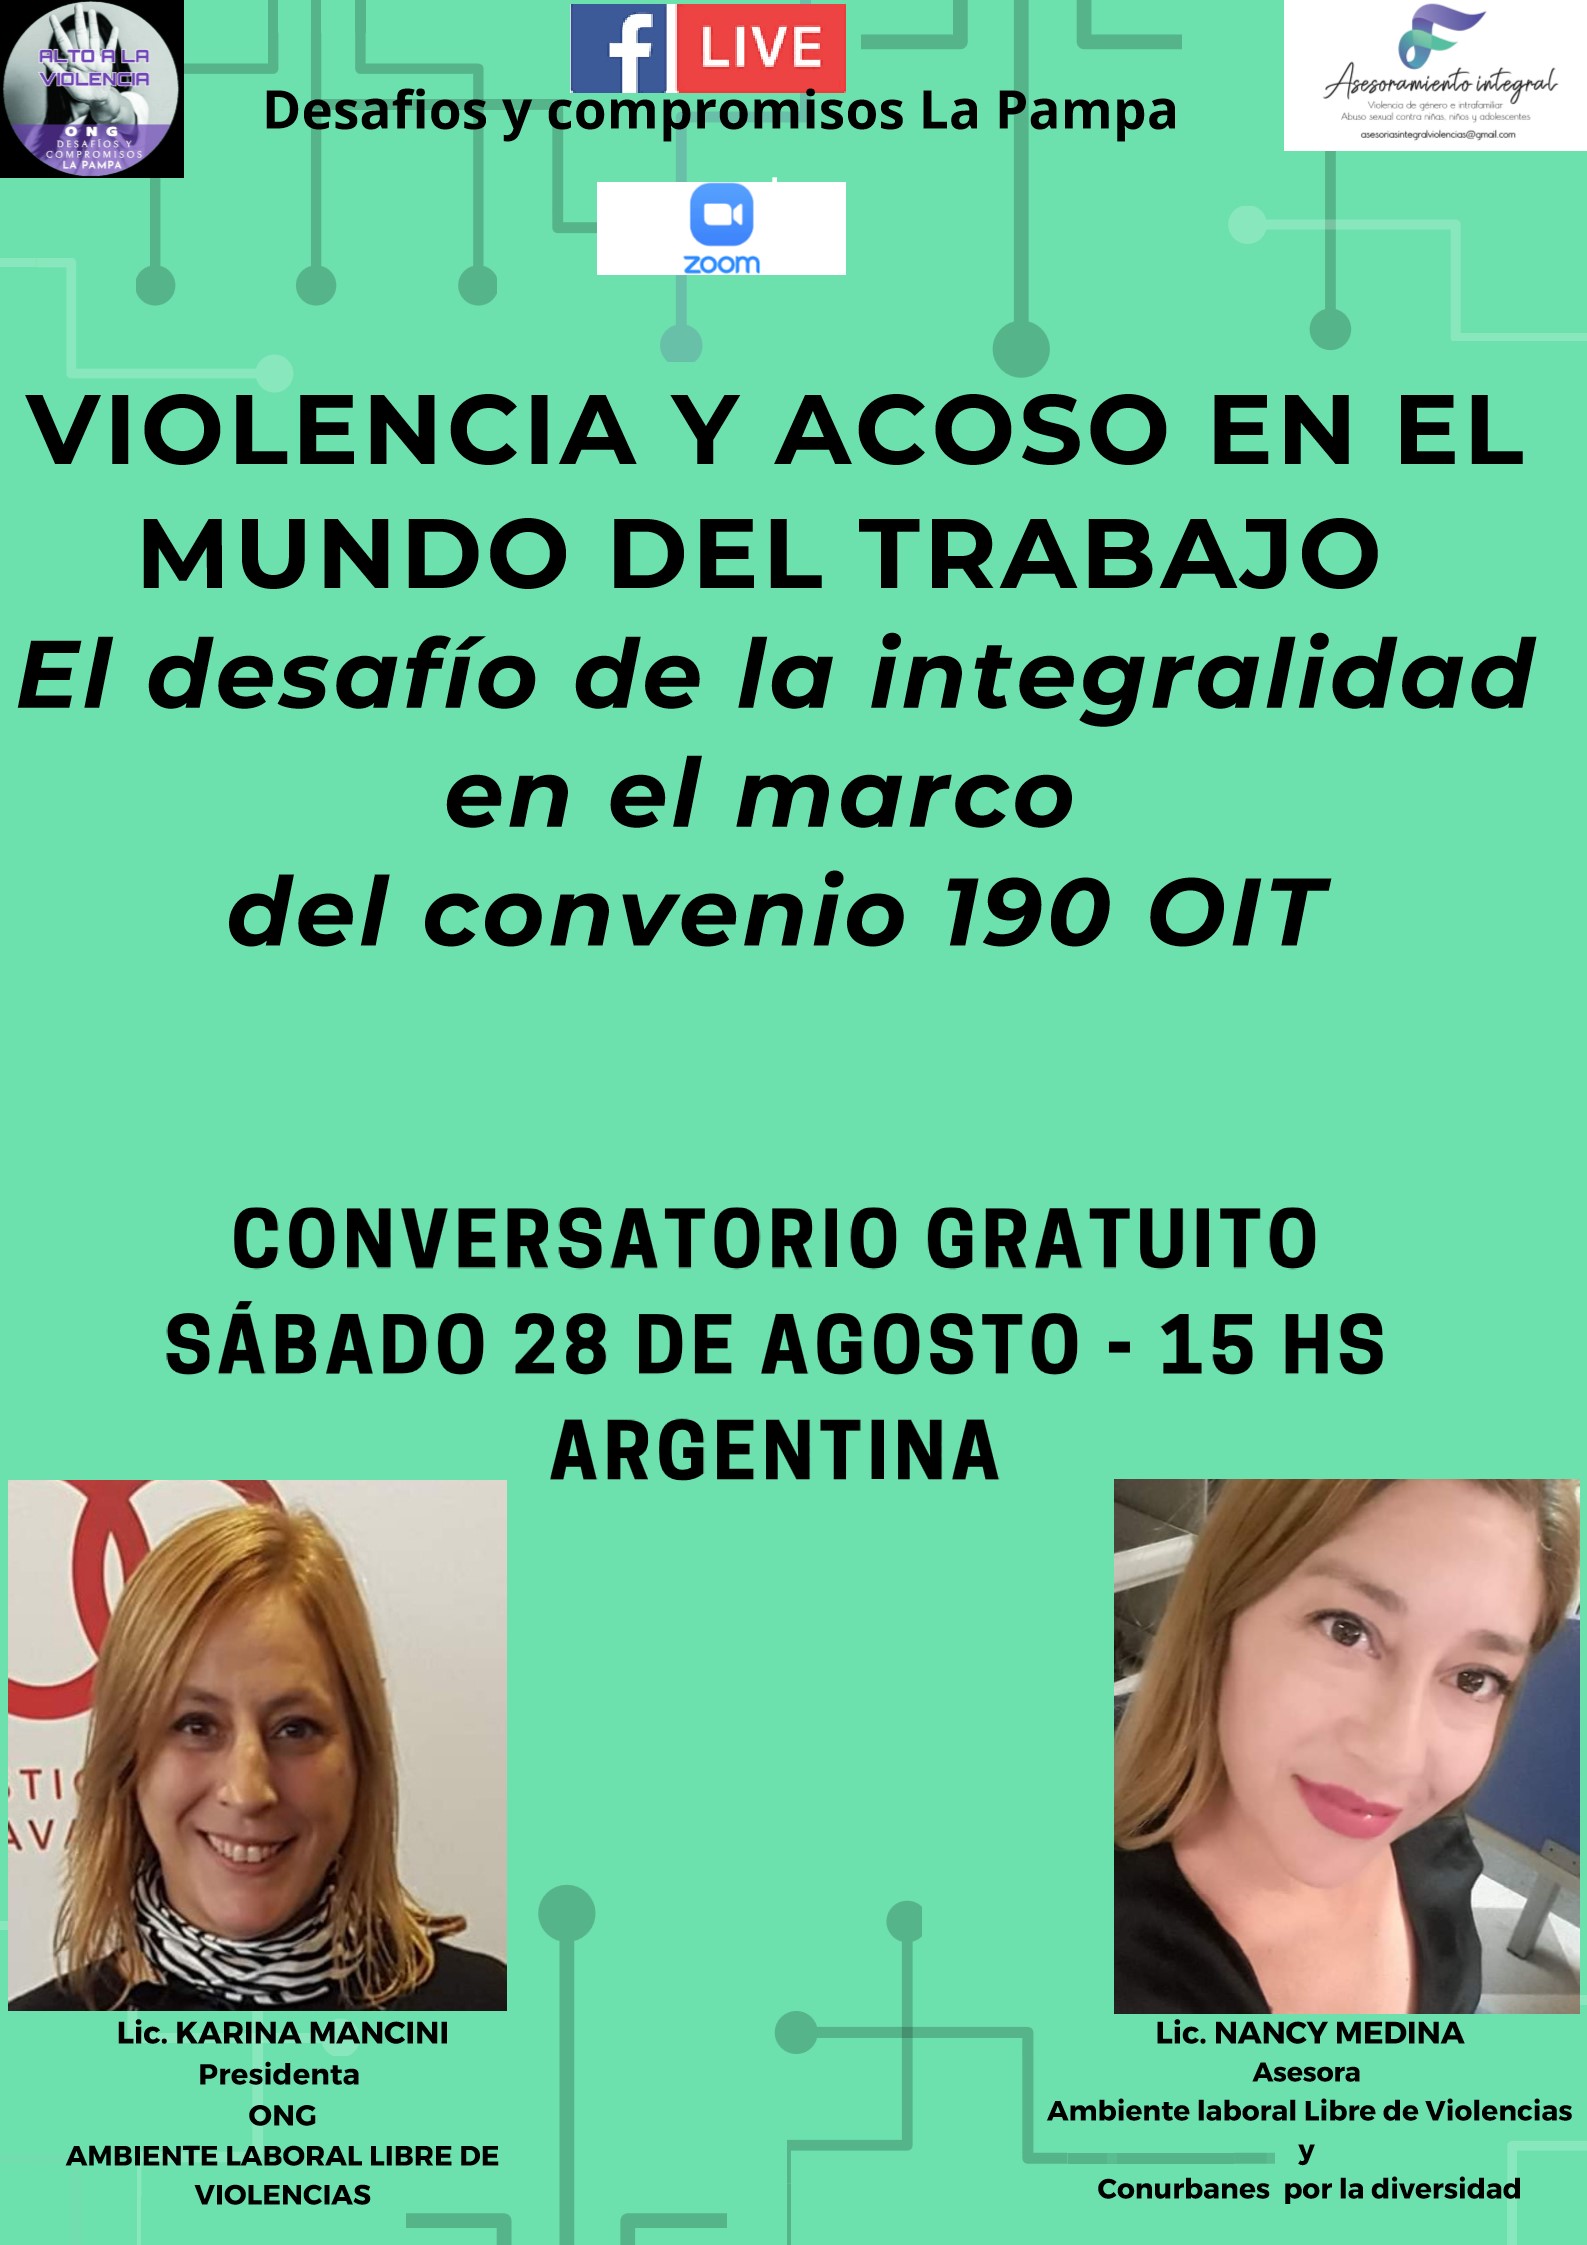 Facebook live: Desafios y compromisos La Pampa - Instagram: @ongdesafiosy